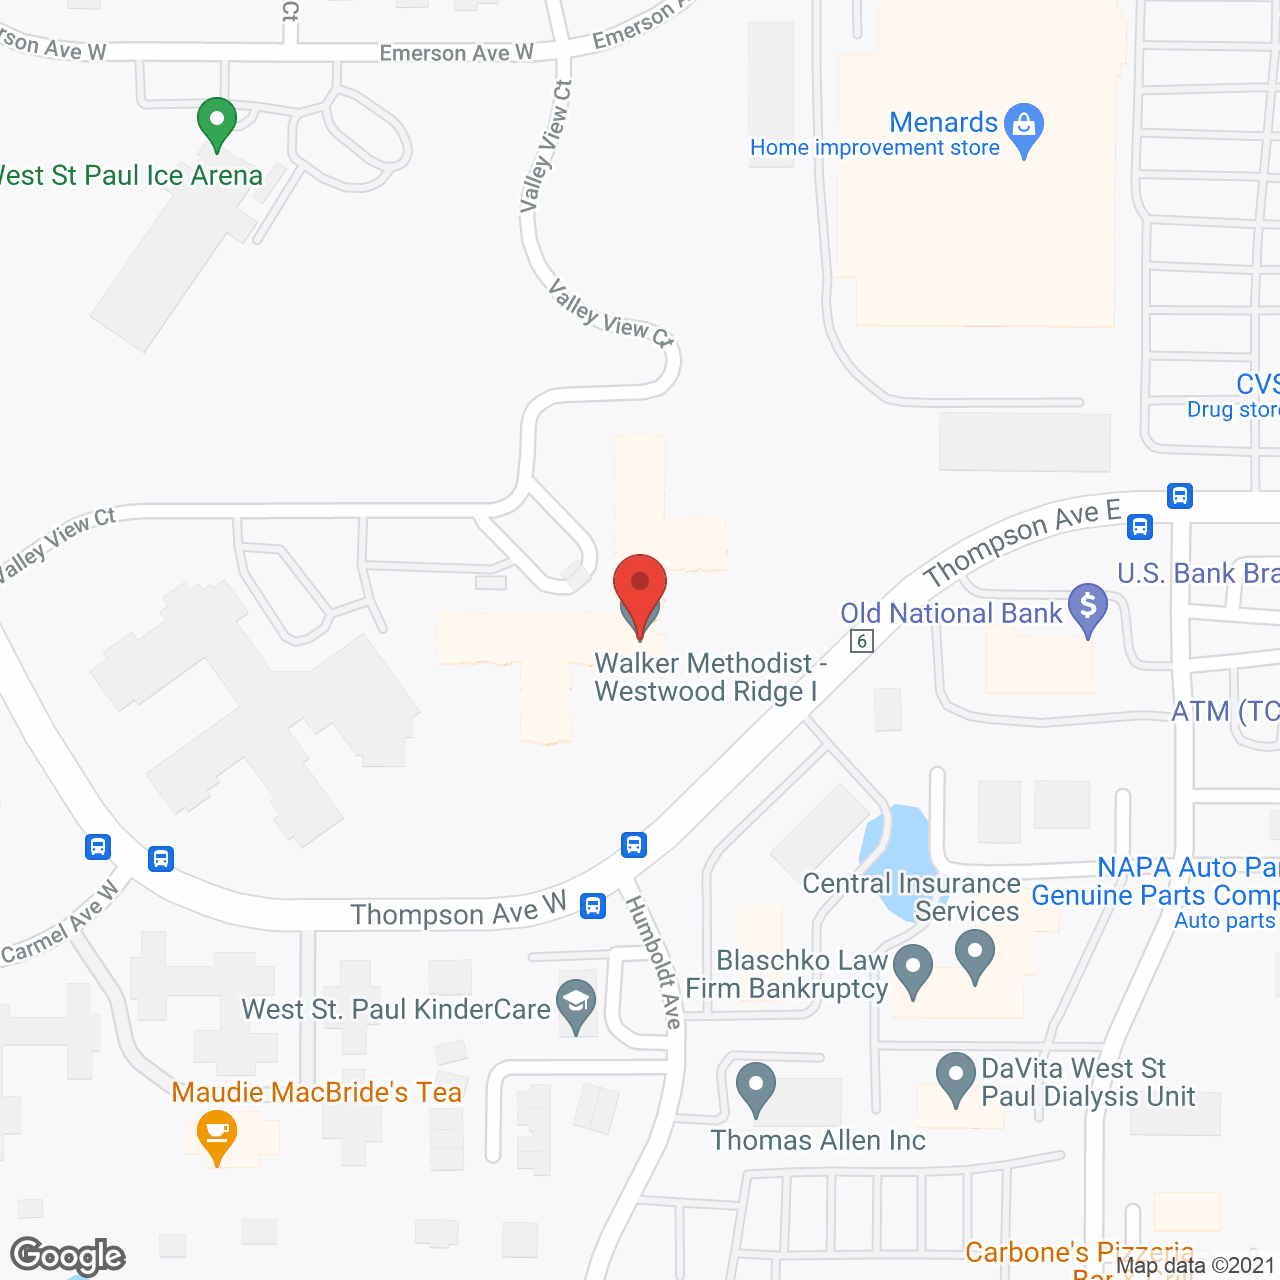 Walker Methodist at Westwood Ridge in google map